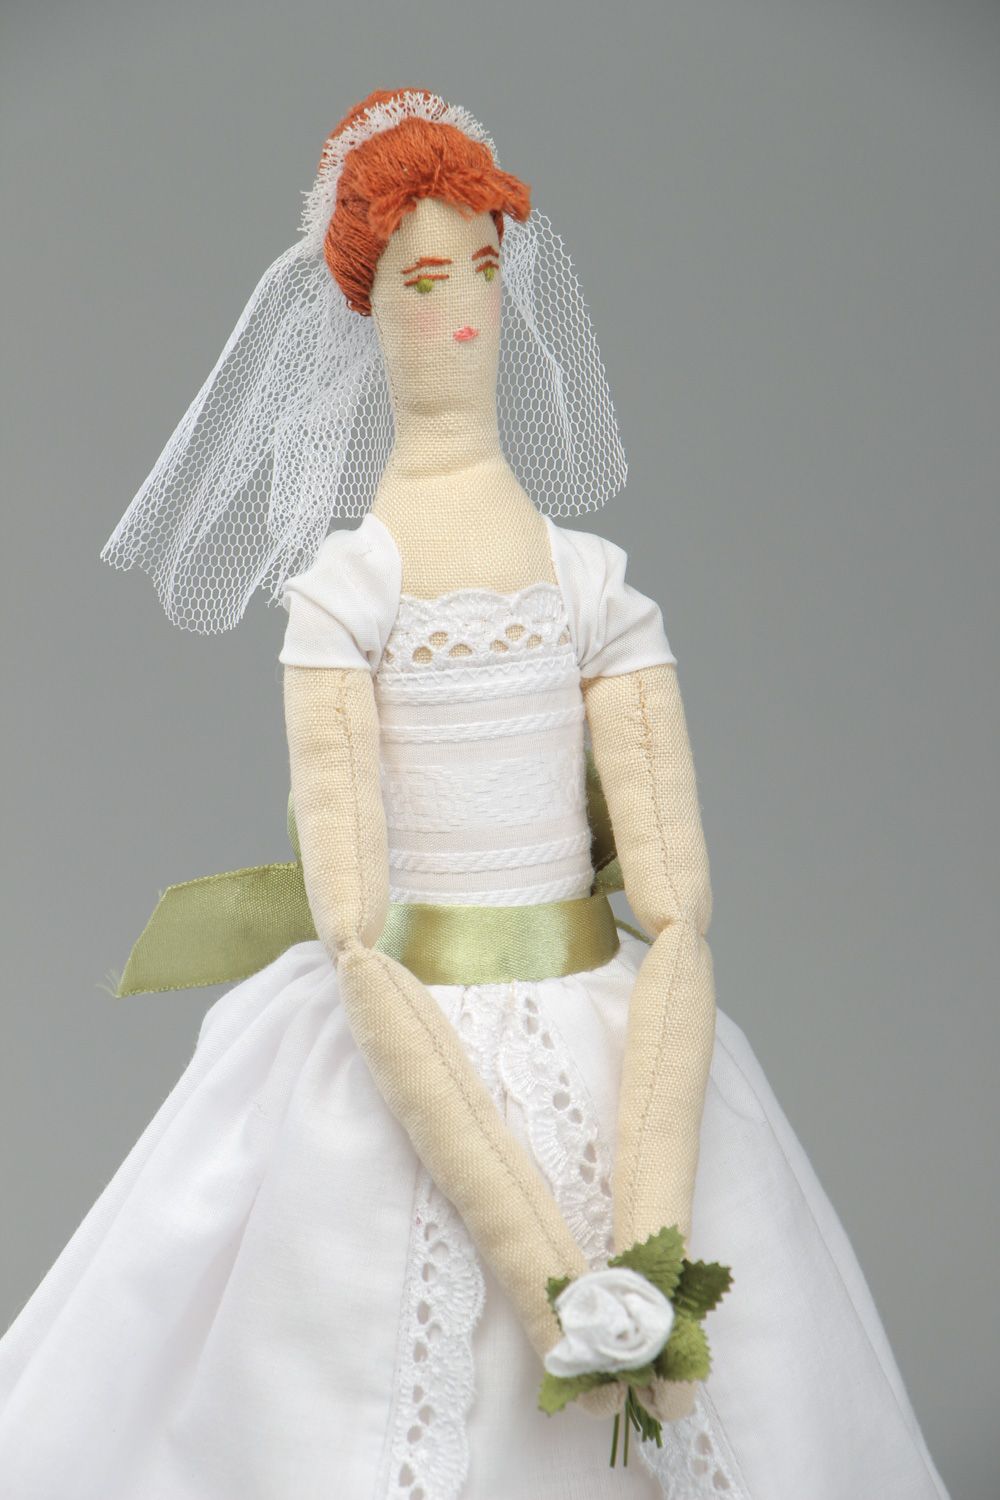 Grande poupée mariée en tissu faite main décorative originale cadeau de mariage photo 2